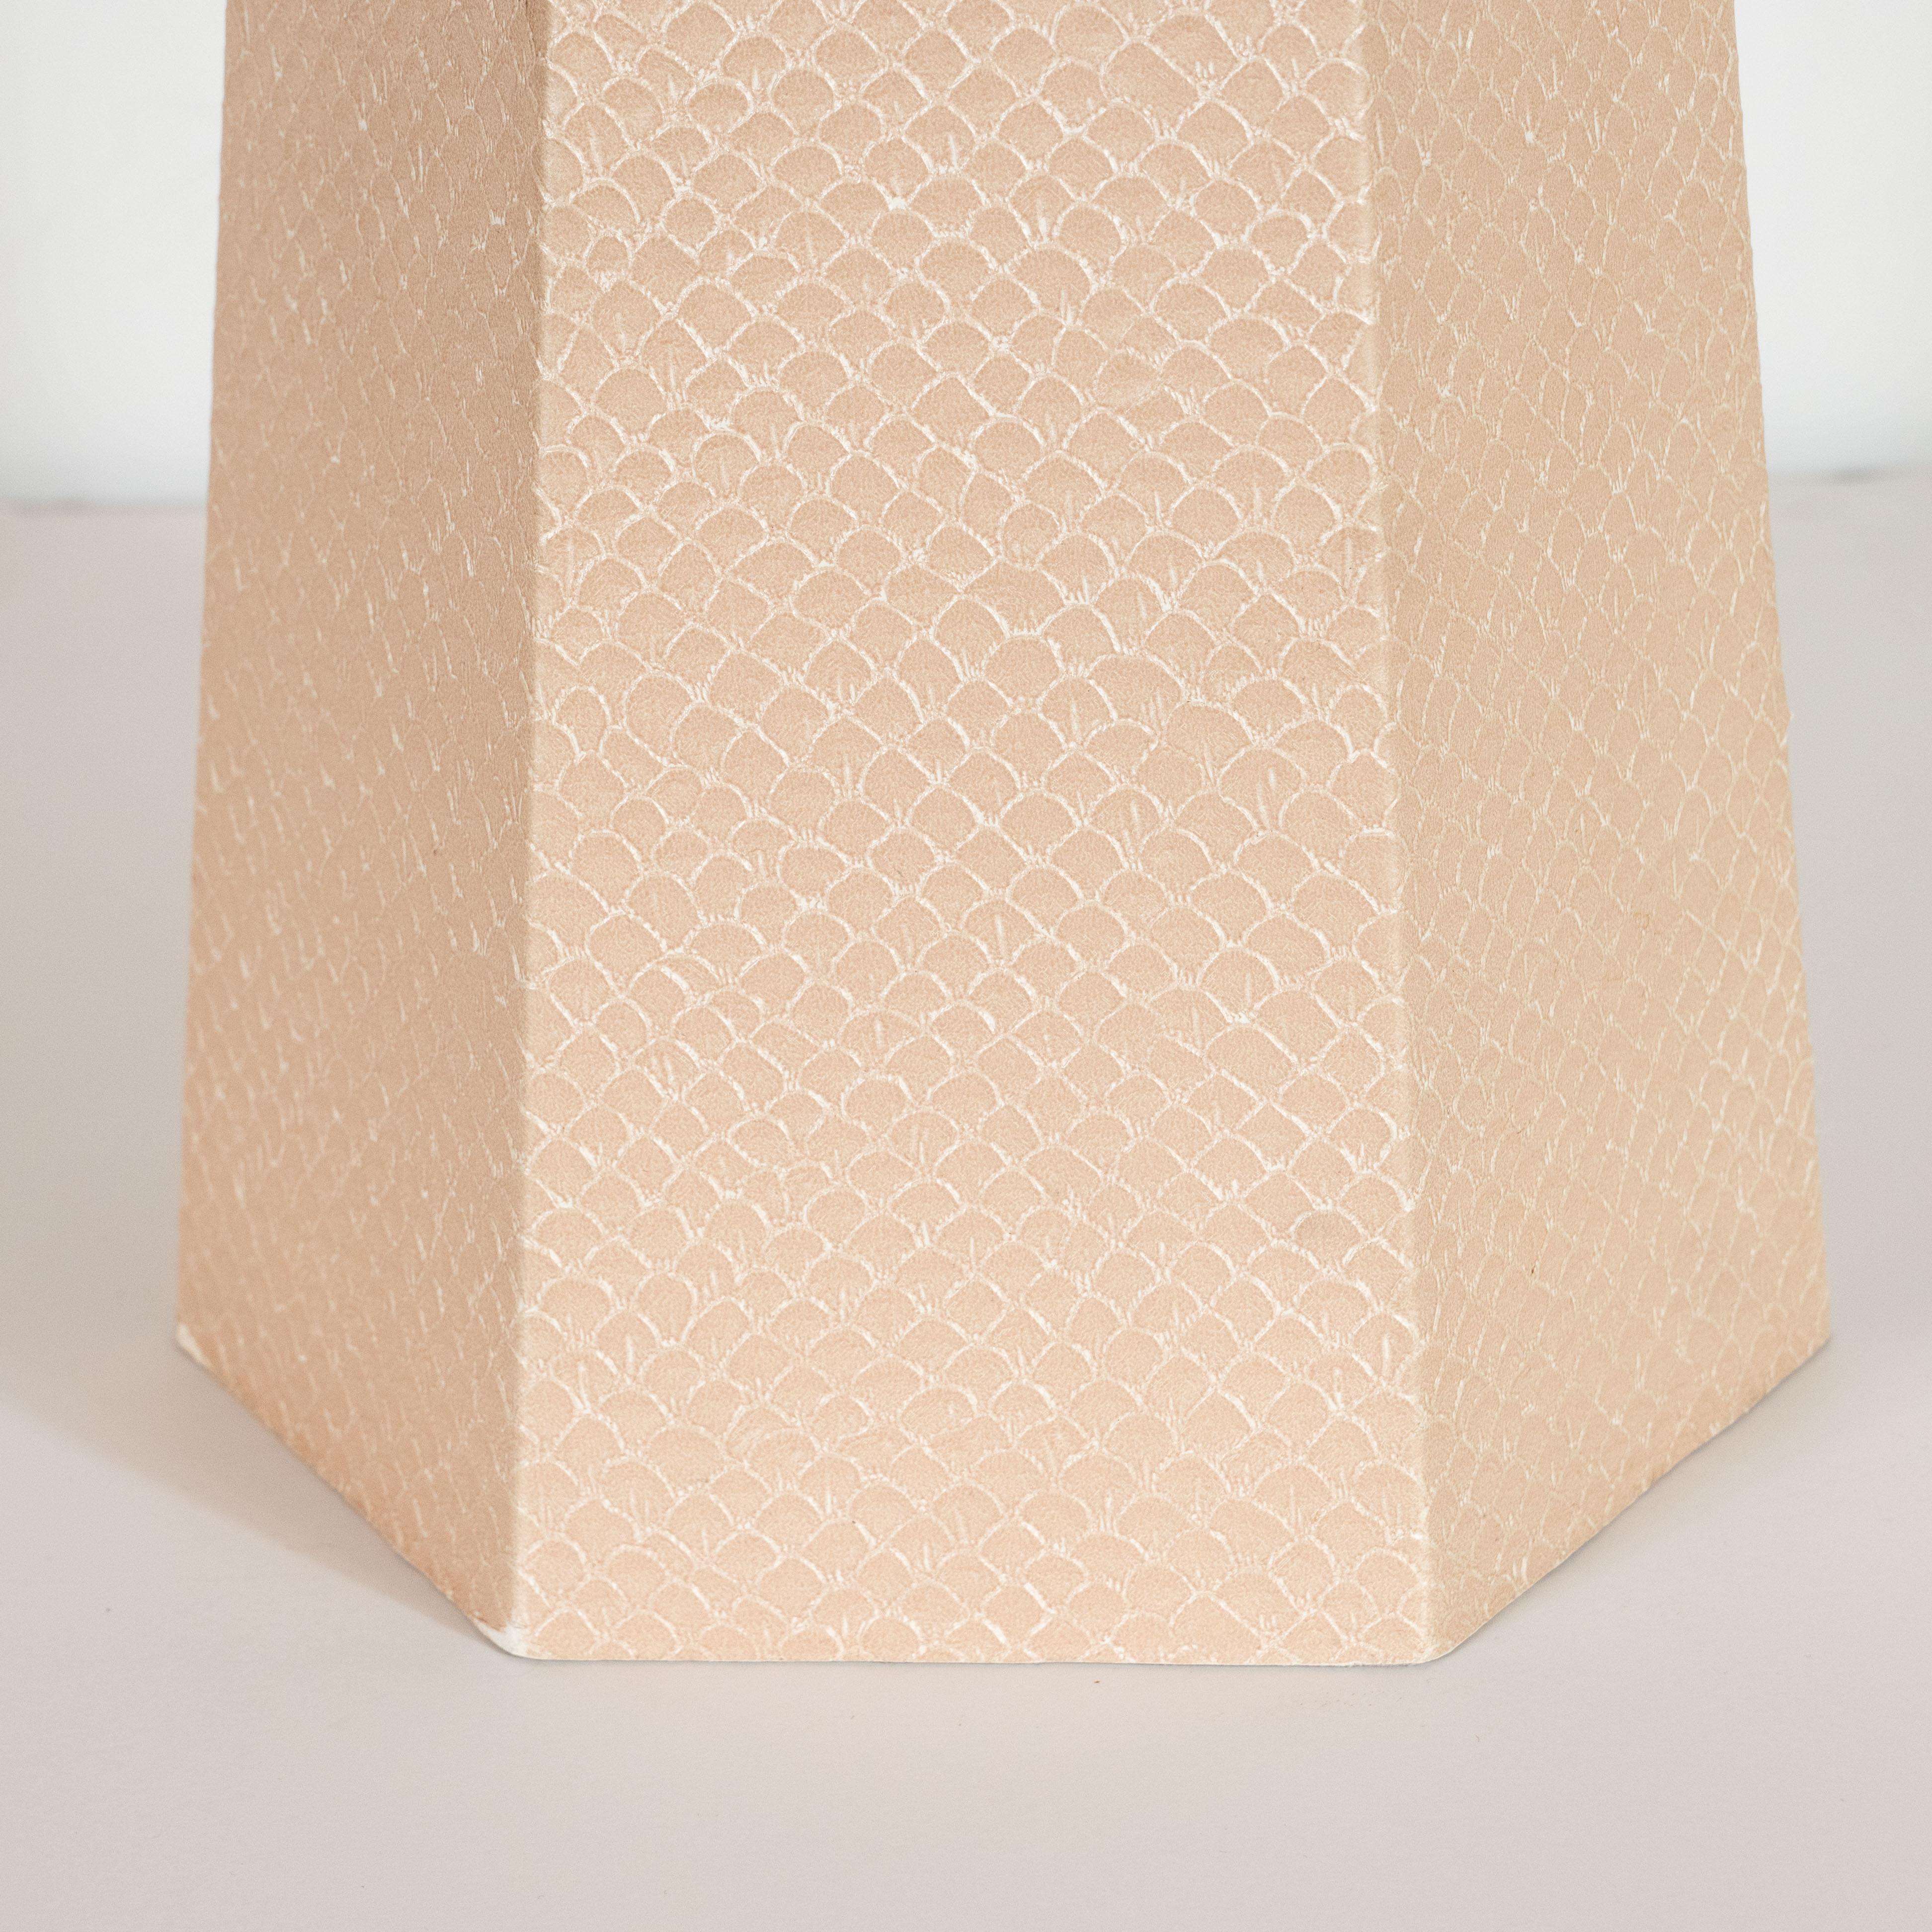 Mid-Century Modern Signed Modernist Karl Springer Hexagonal Table Lamp in Buff-Colored Snakeskin